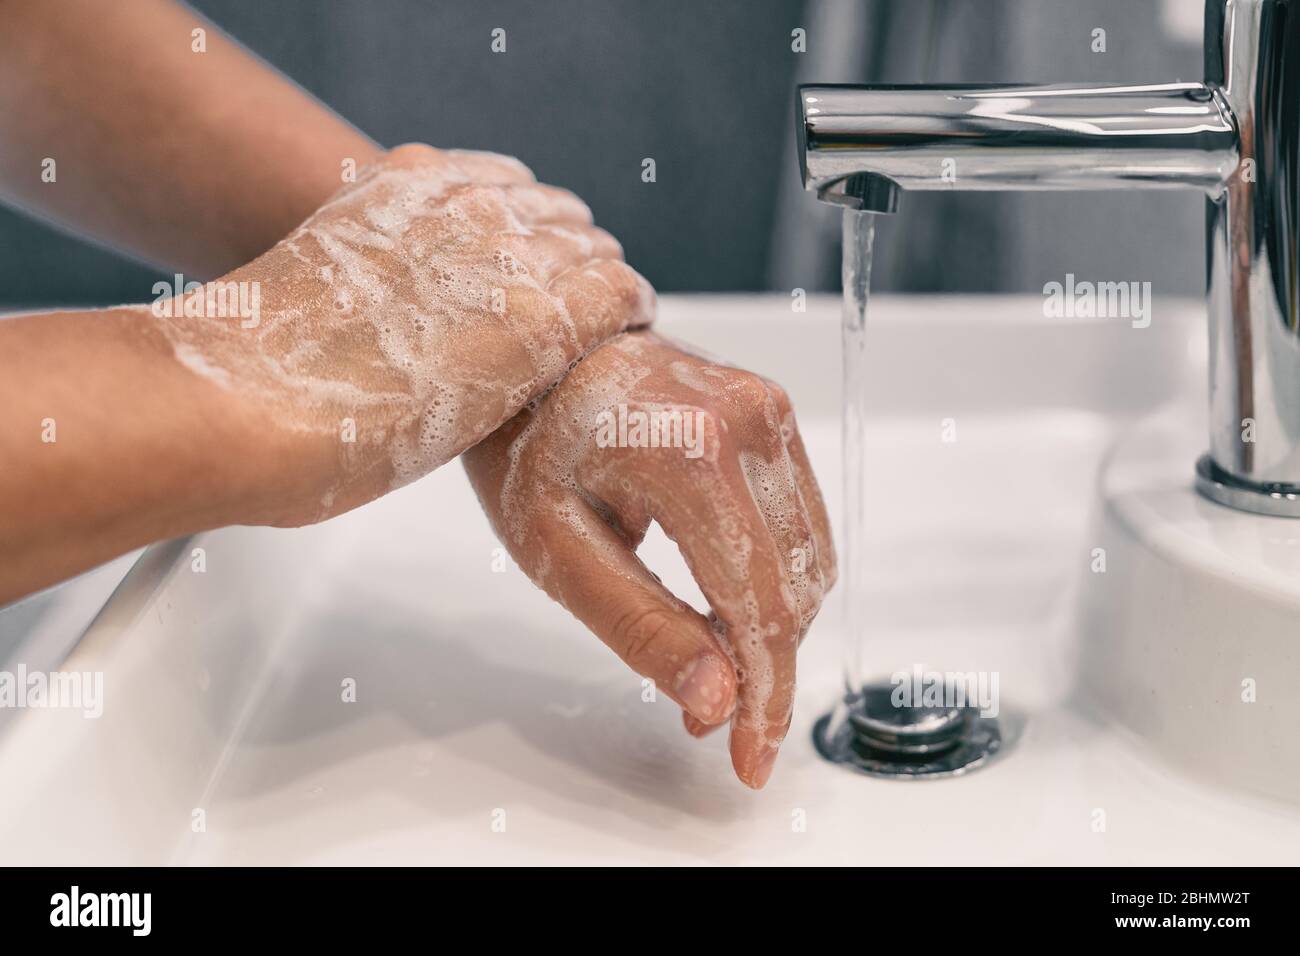 Lavaggio delle mani igiene personale donna lavaggio mani sapone strofinante per 20 secondi dopo i passi, pulizia polsi e risciacquo sotto acqua in bagno di casa. COVID-19 prevenzione delle infezioni lavaggio mani. Foto Stock